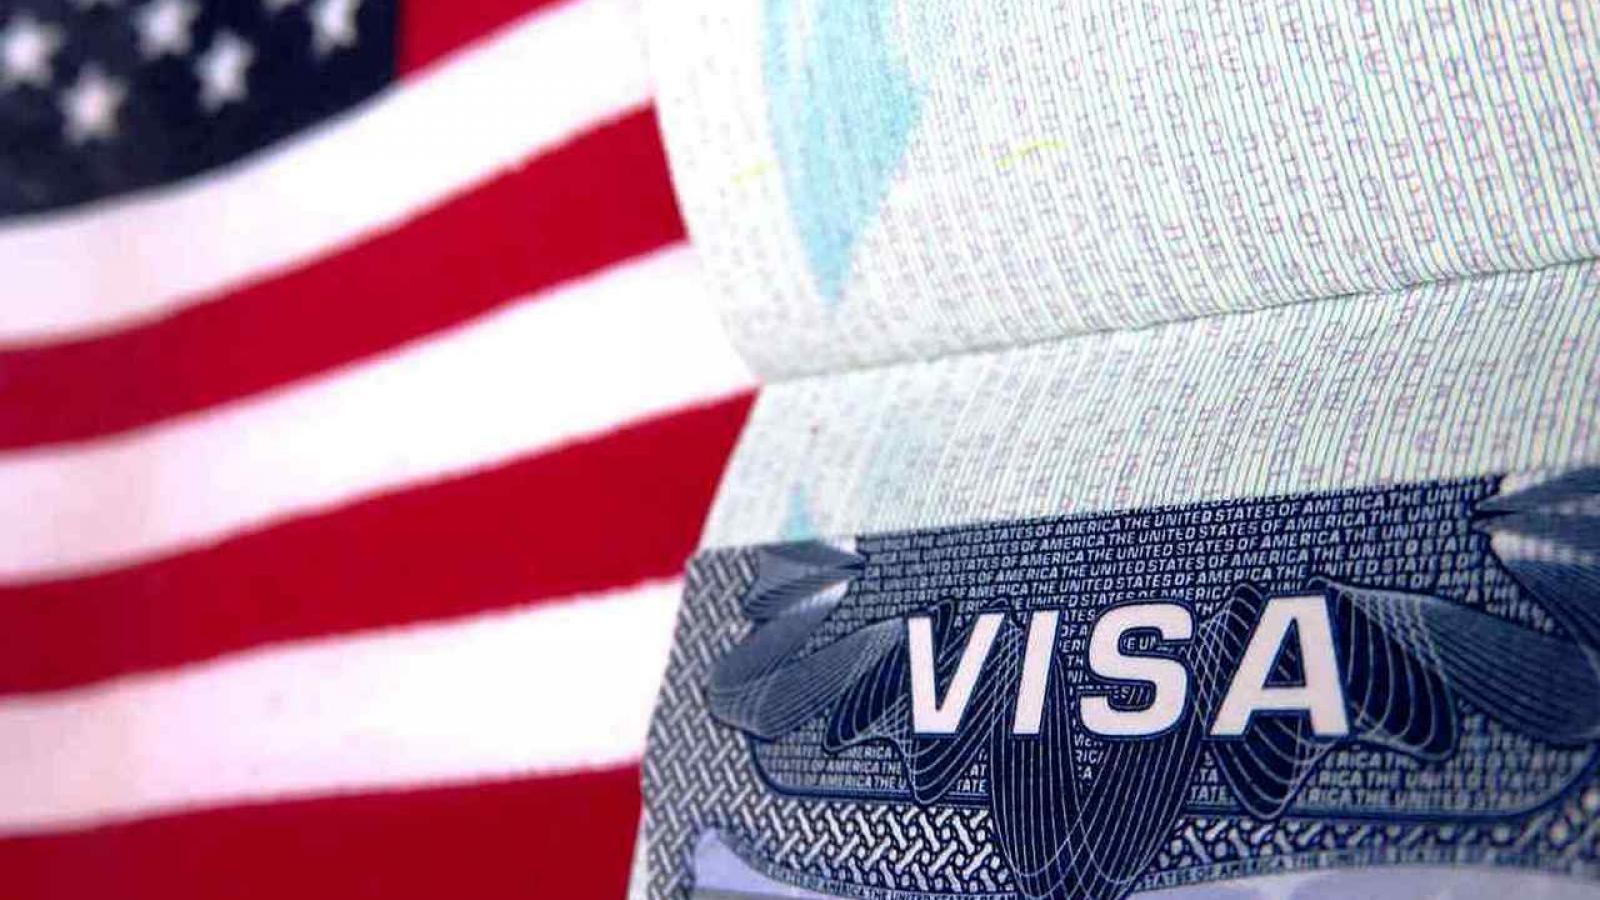 Как получить визу в США